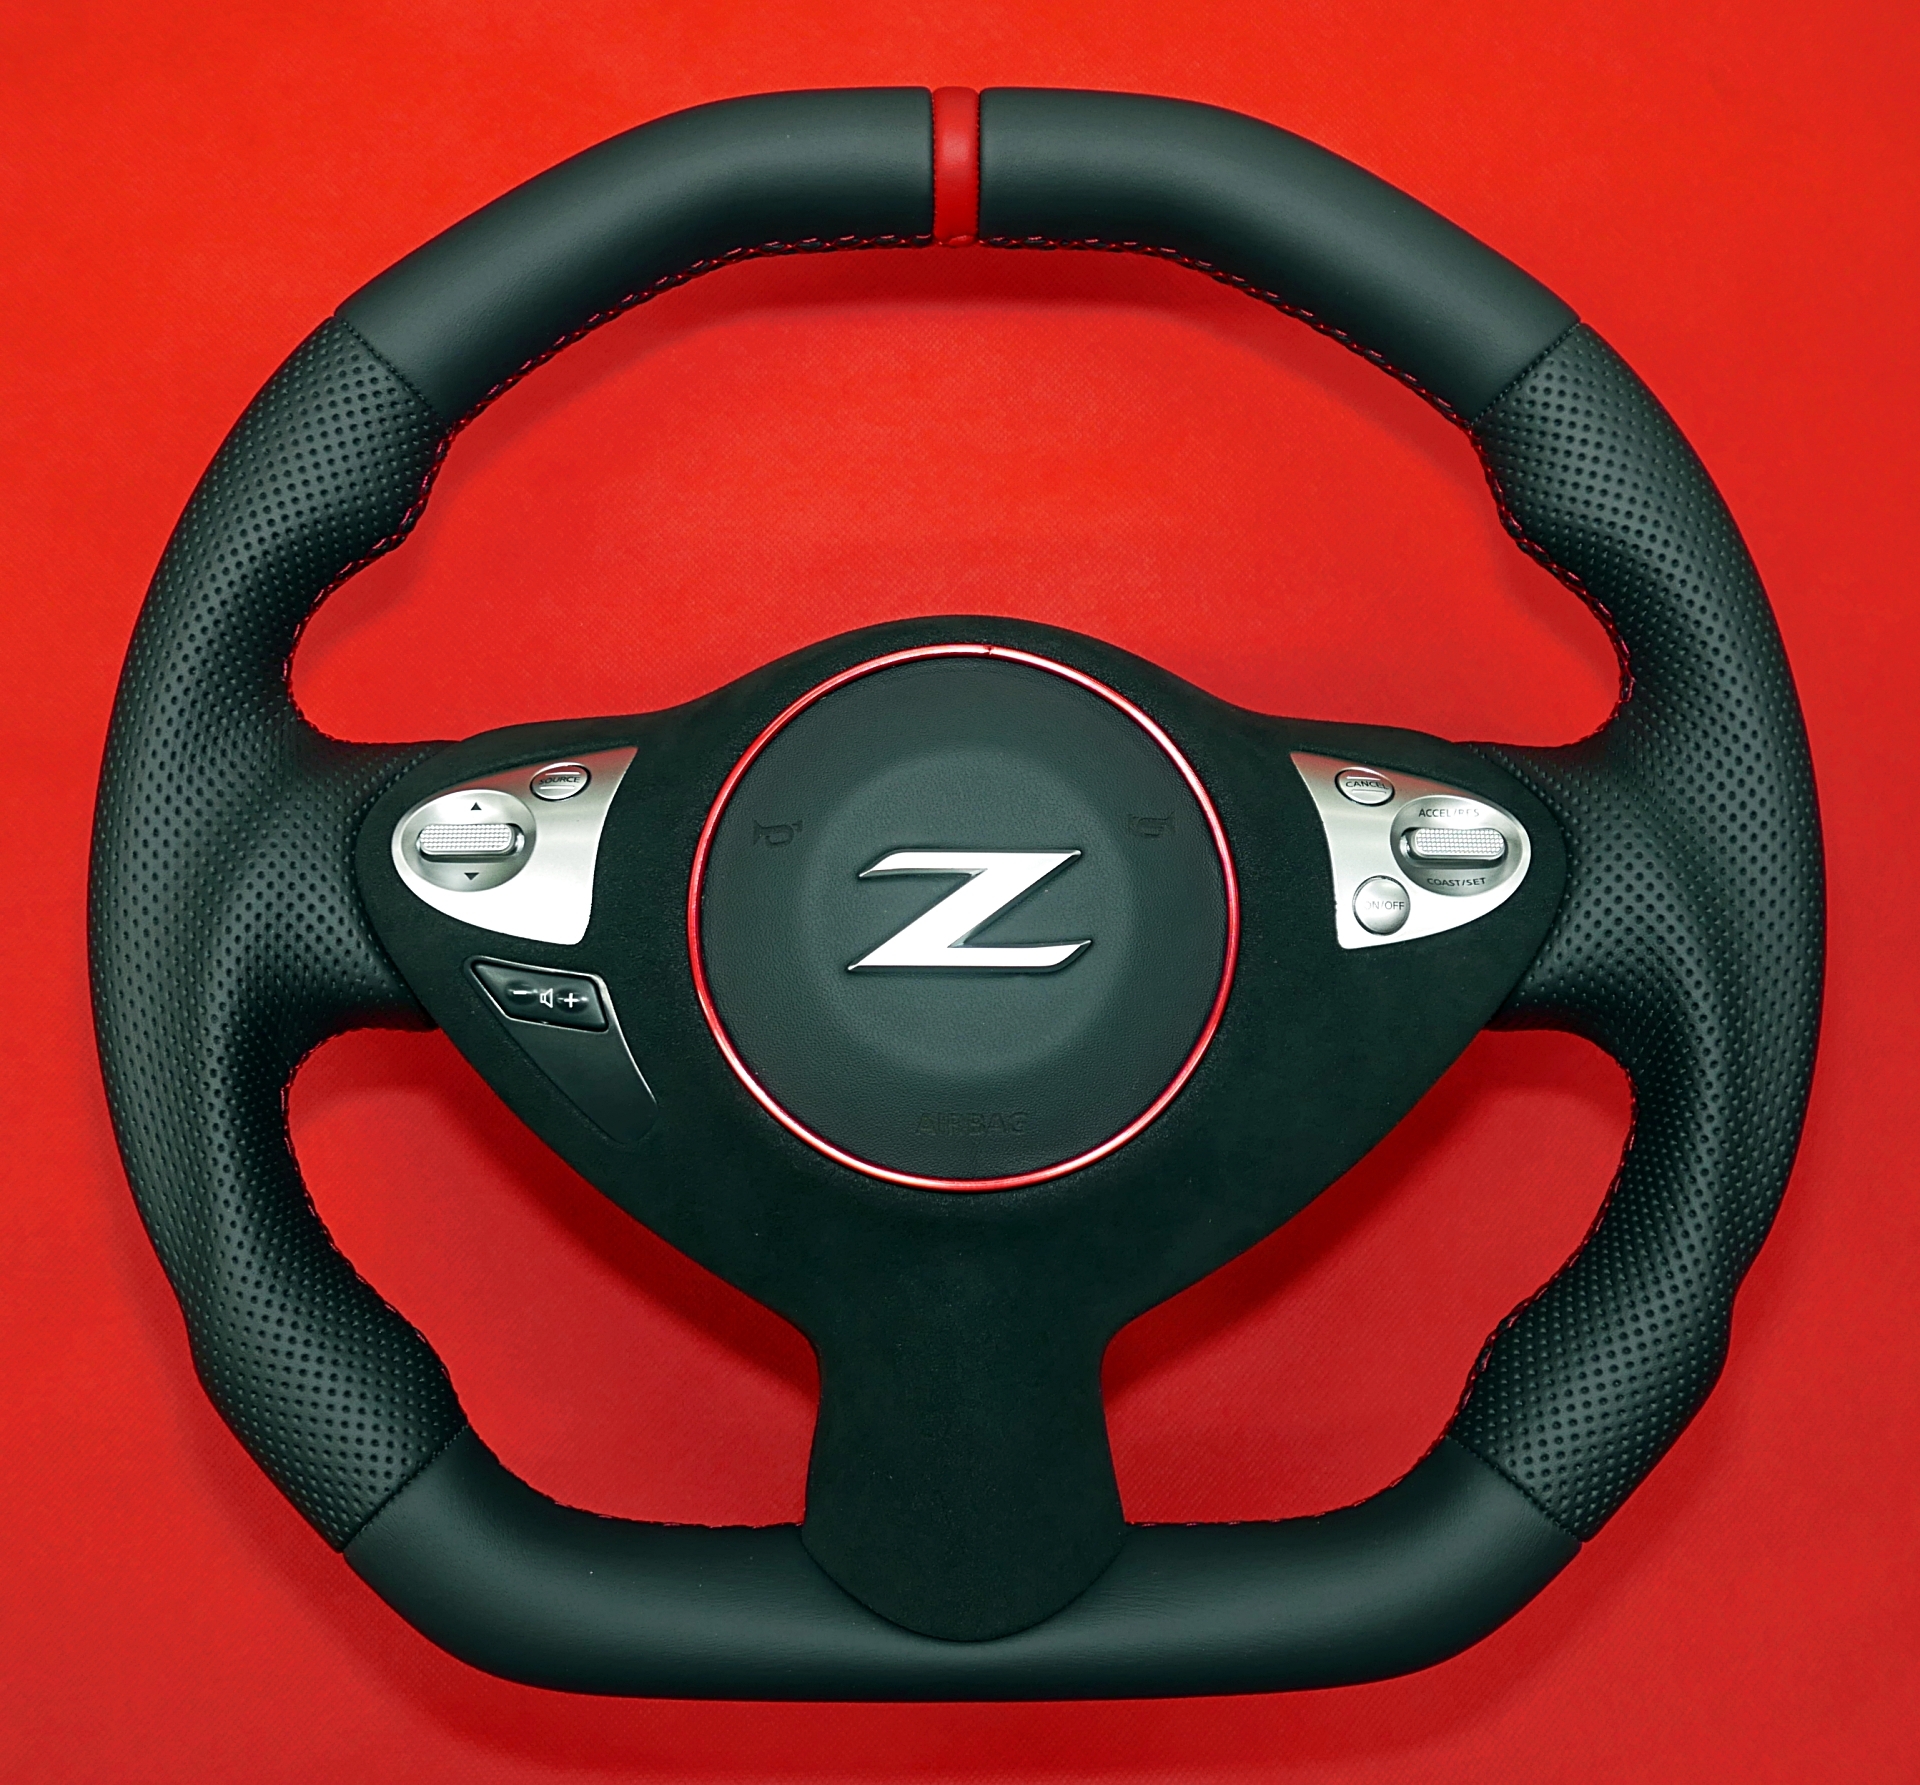 Kierownica Nissan 370Z zmiana kształtu tuning